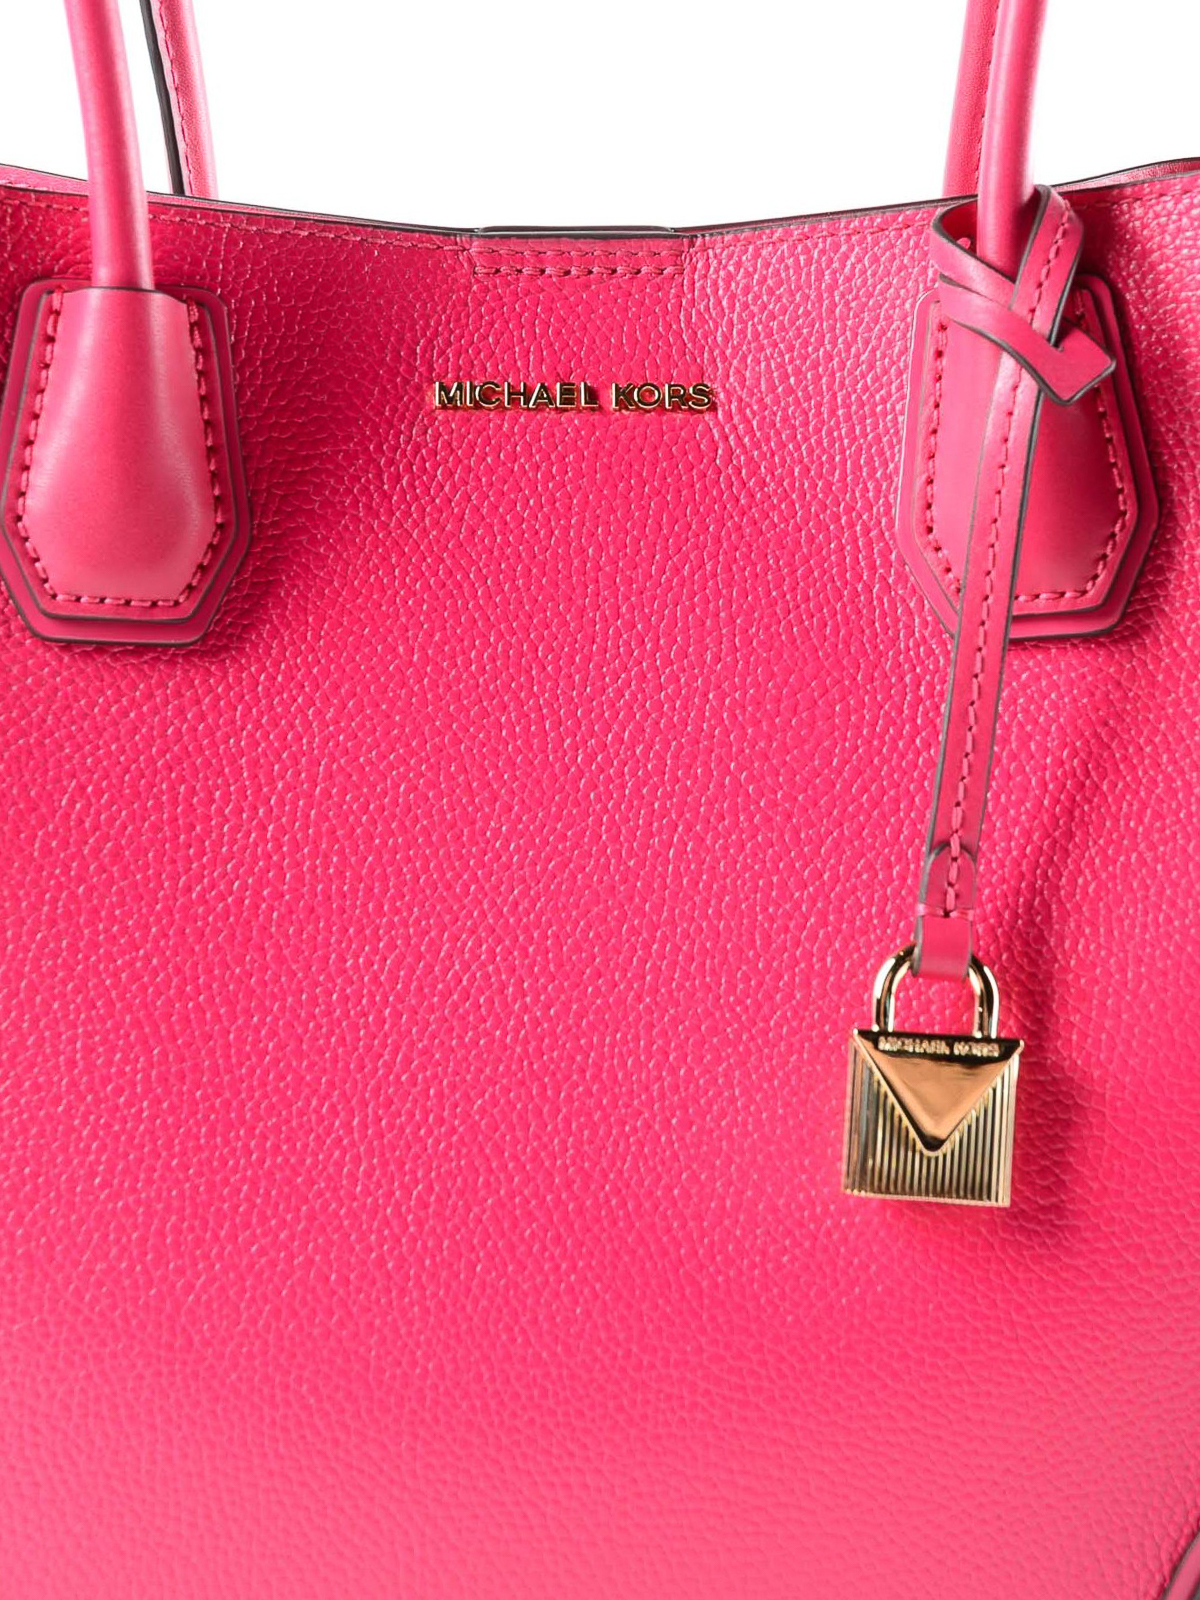 Totes bags Michael Kors - Mercer Gallery M ultra pink bag